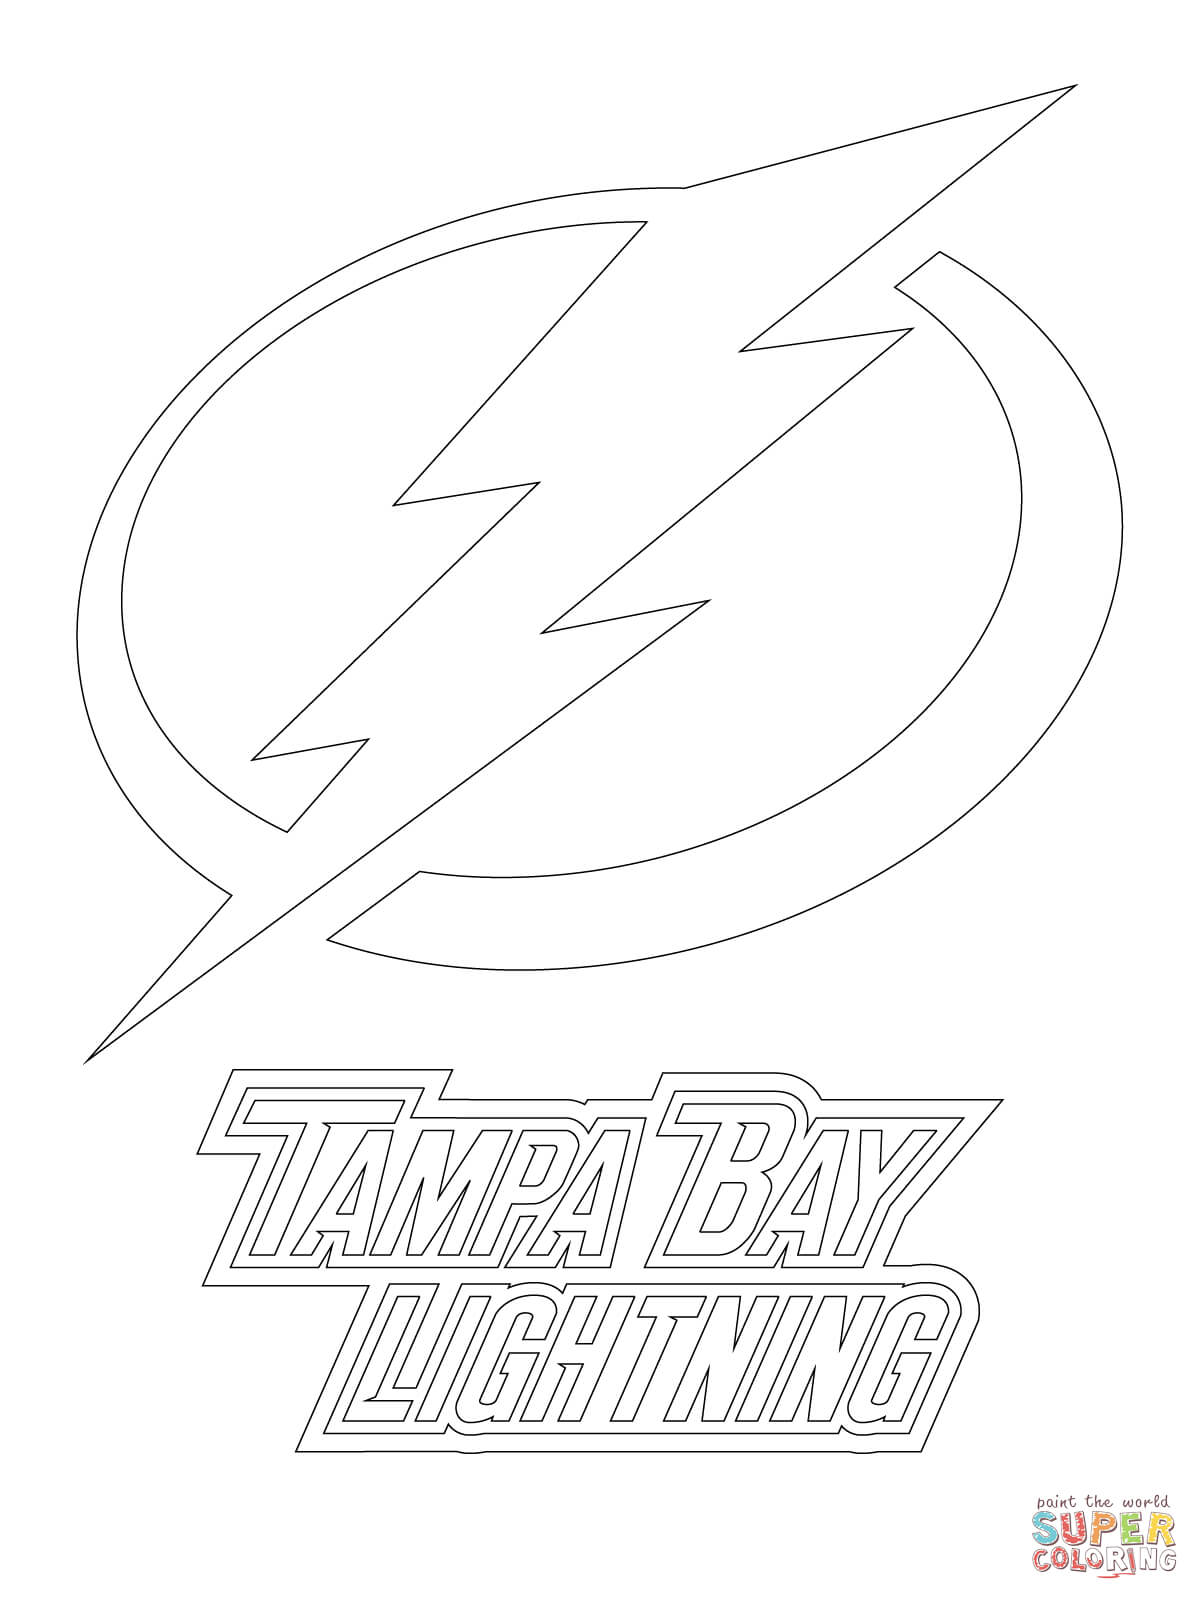 Раскраска логотипа Тампа Бэй Лайтнинг